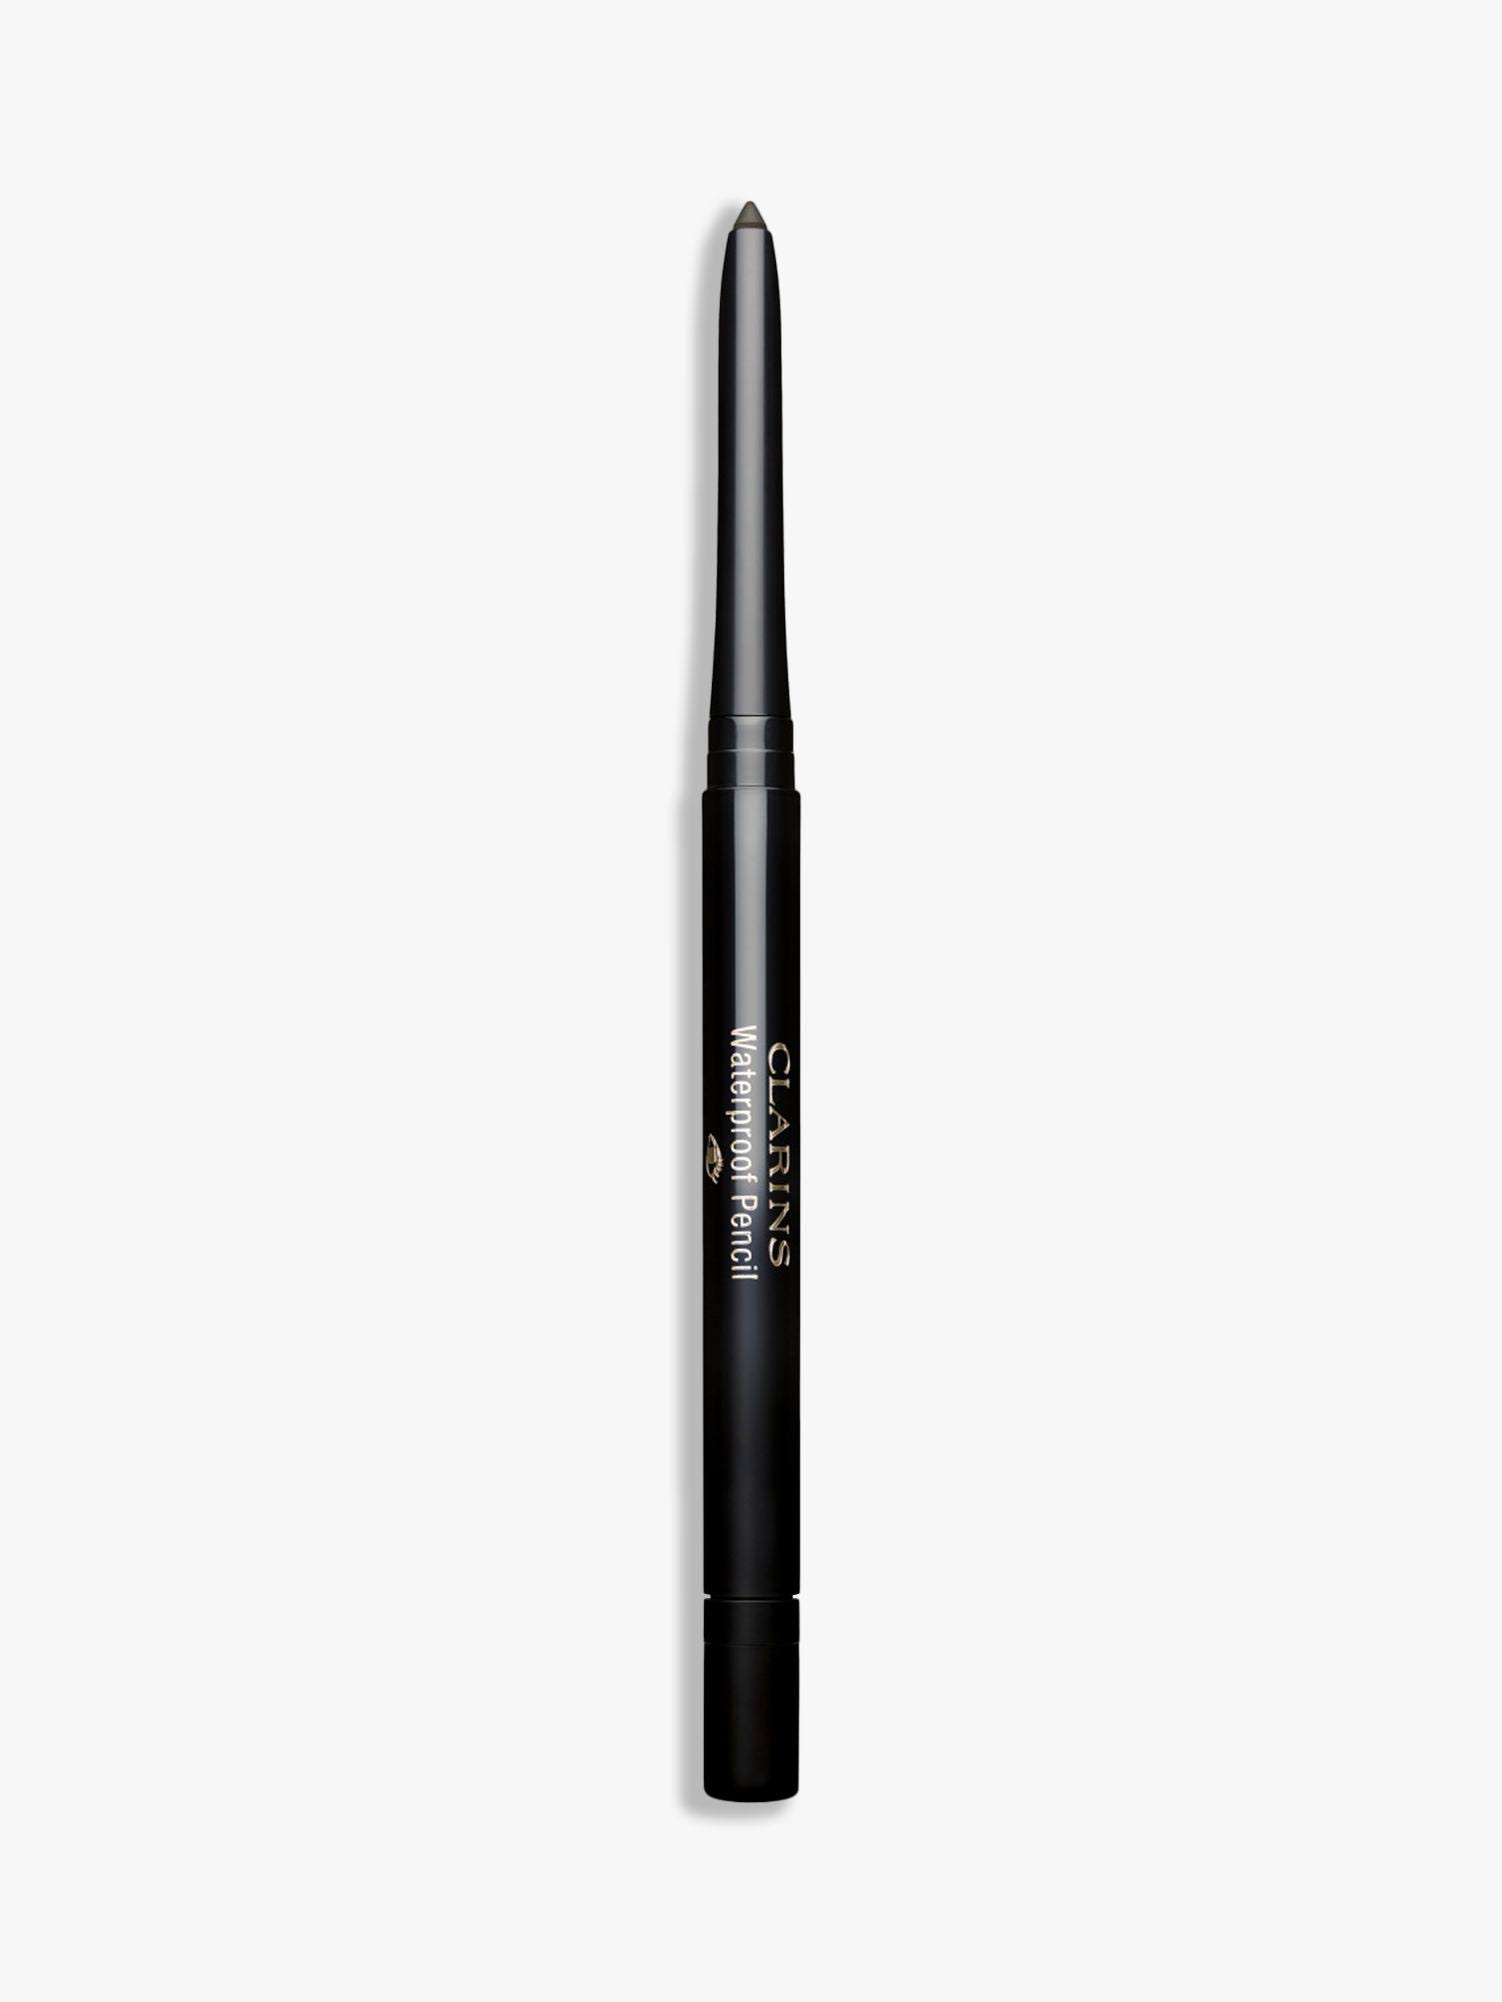 Clarins Waterproof Eye Pencil - 01 Black Tulip, 0.29g